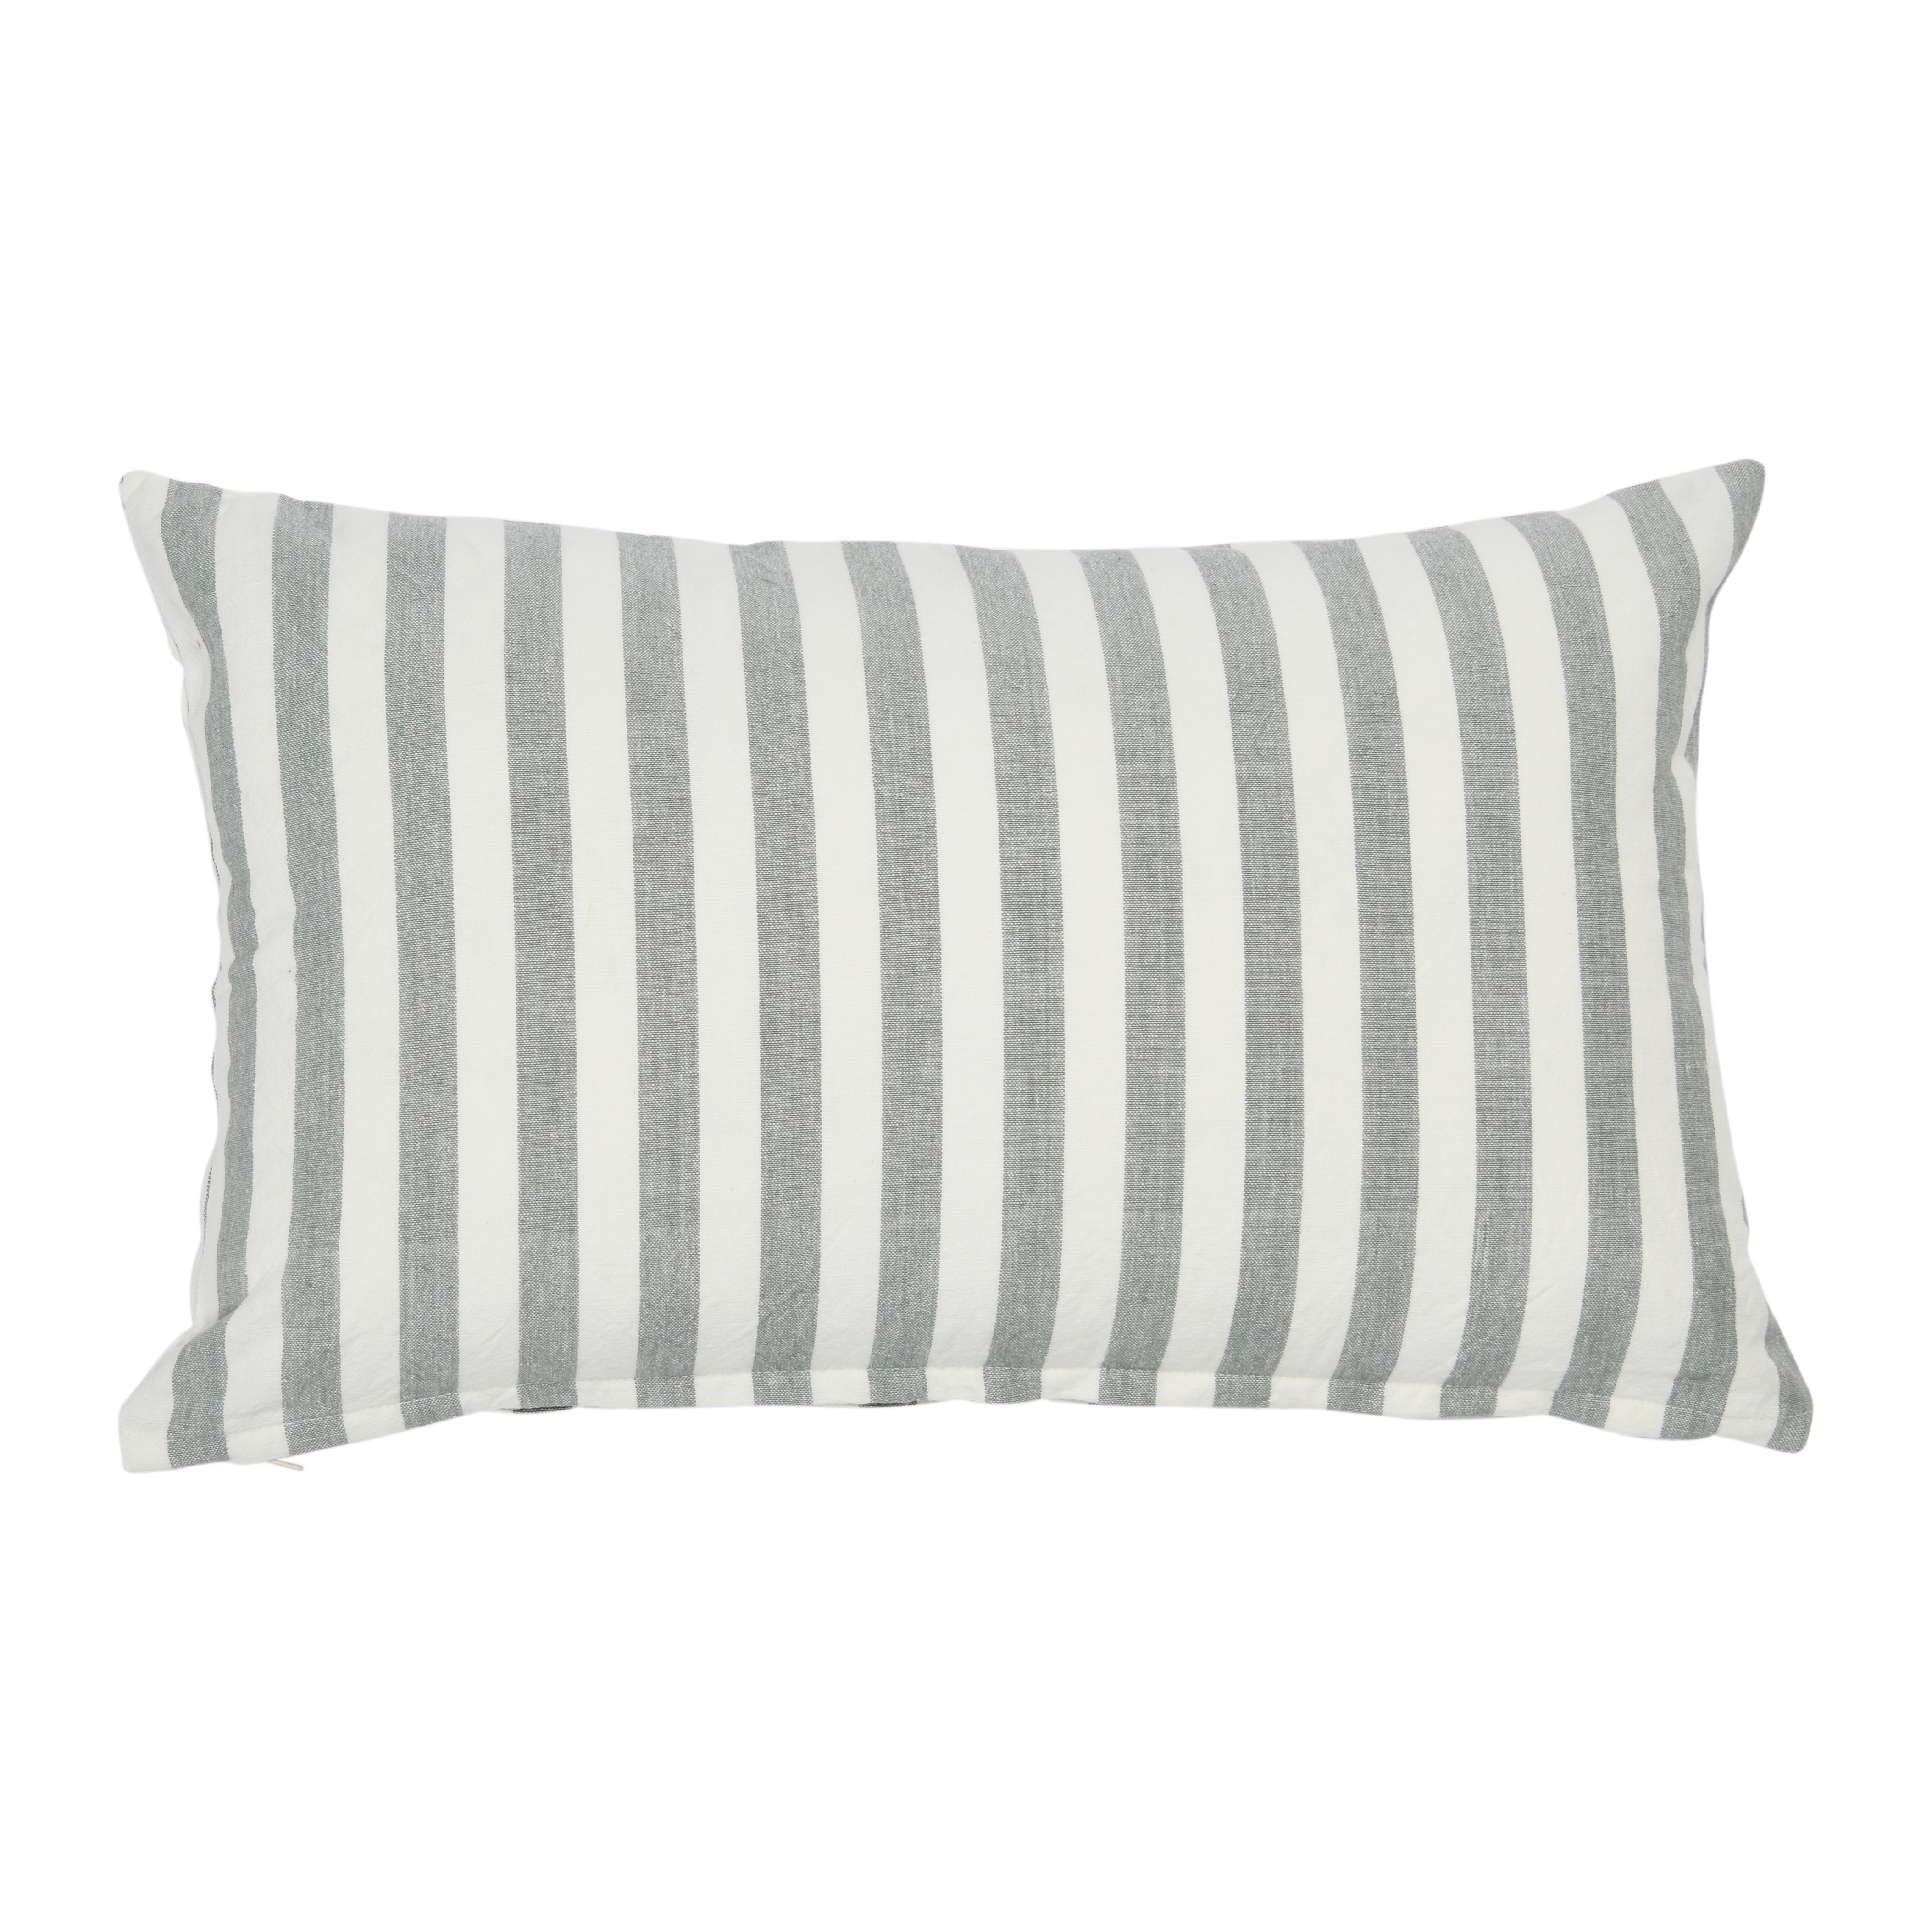 Striped Cotton Lumbar Pillow, Grey - Image 0